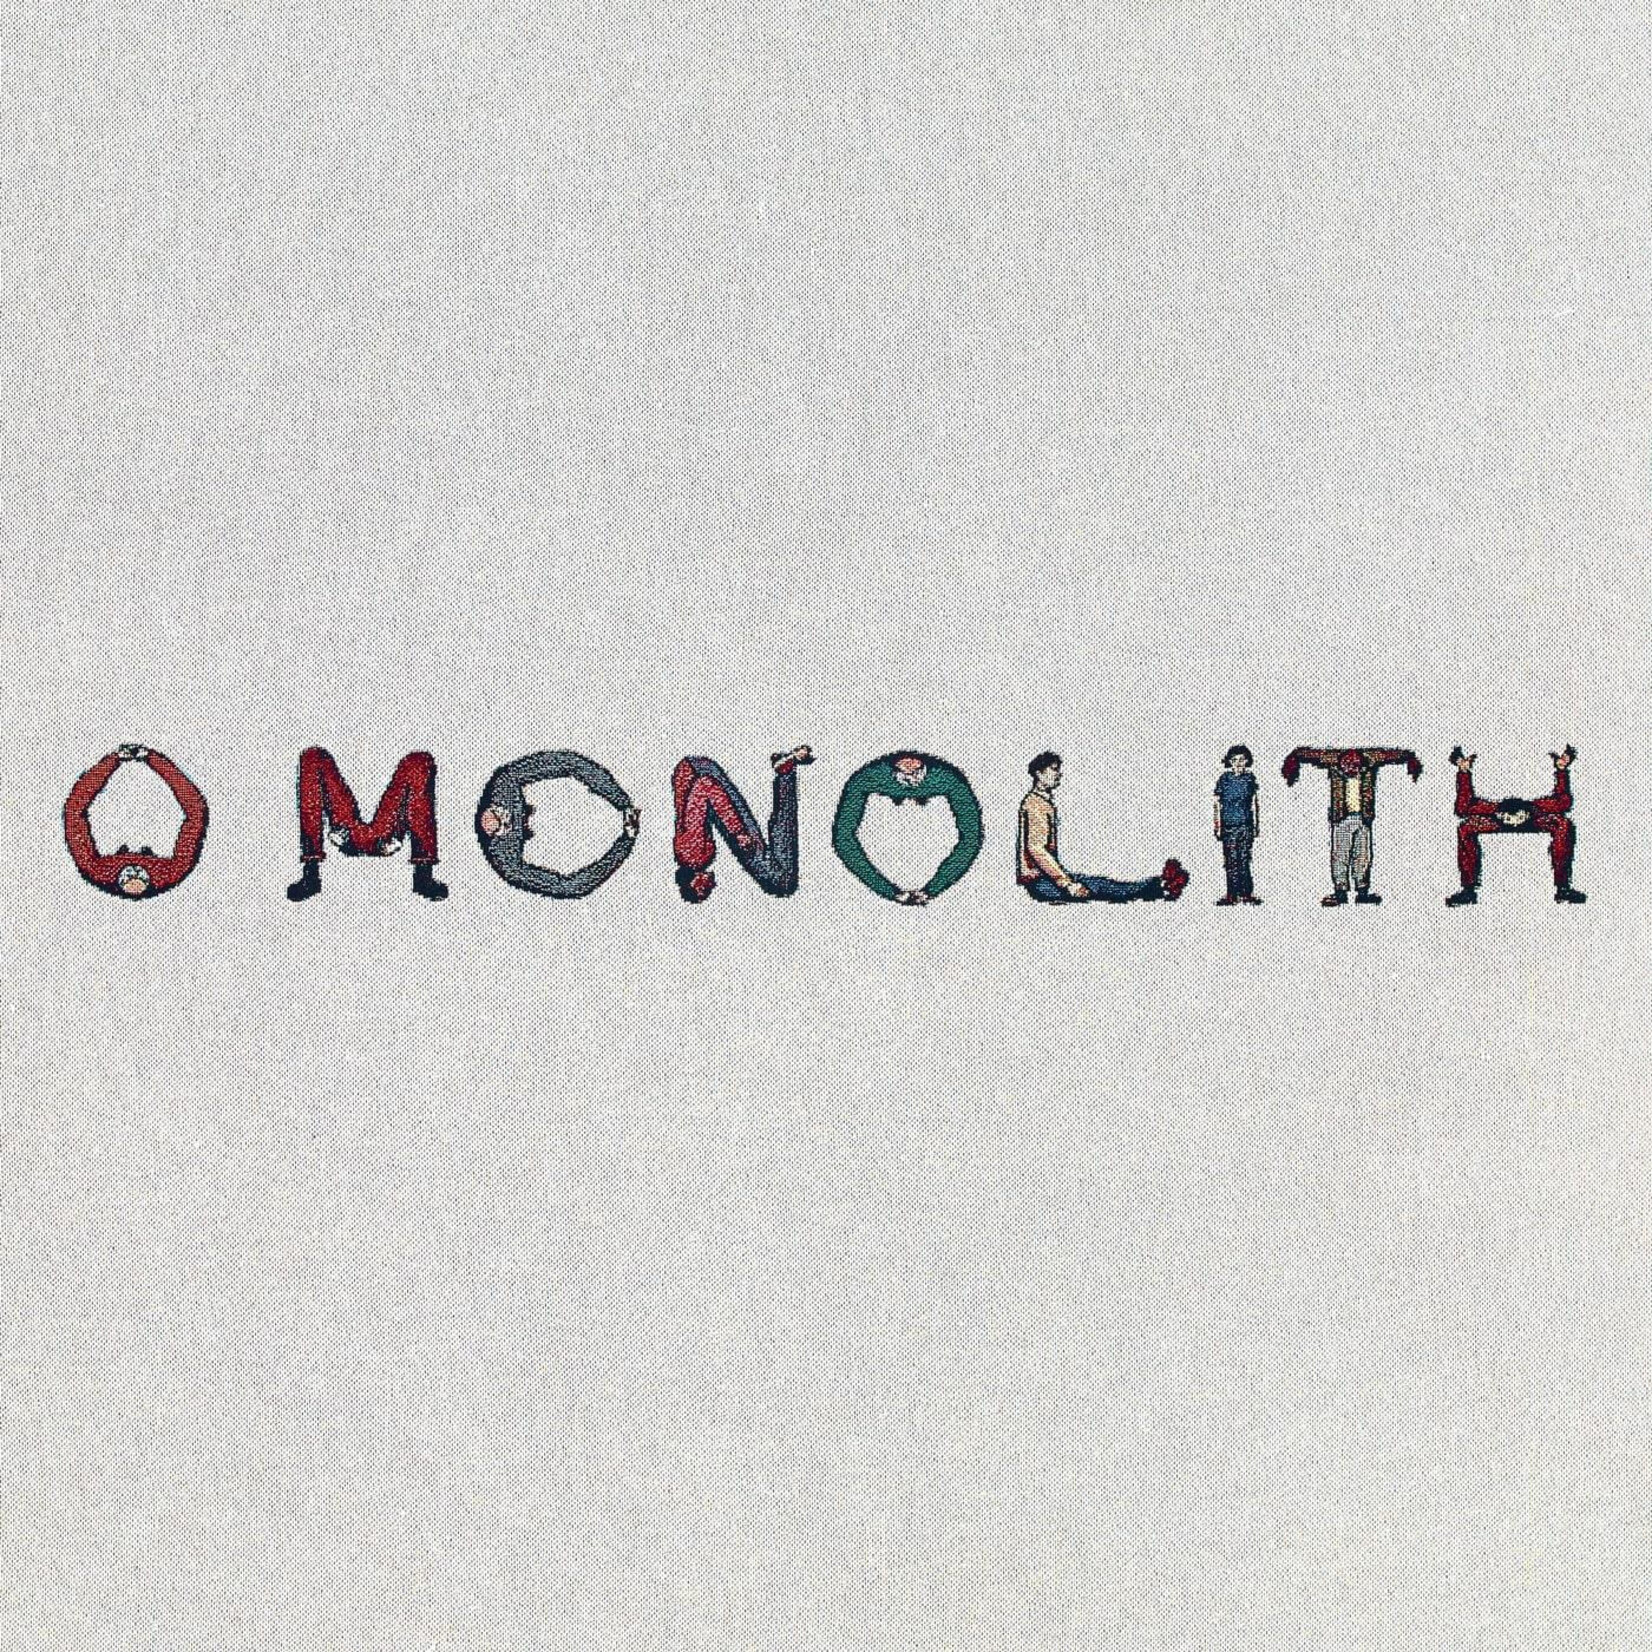 Warp Squid - O Monolith (LP) [Blue]